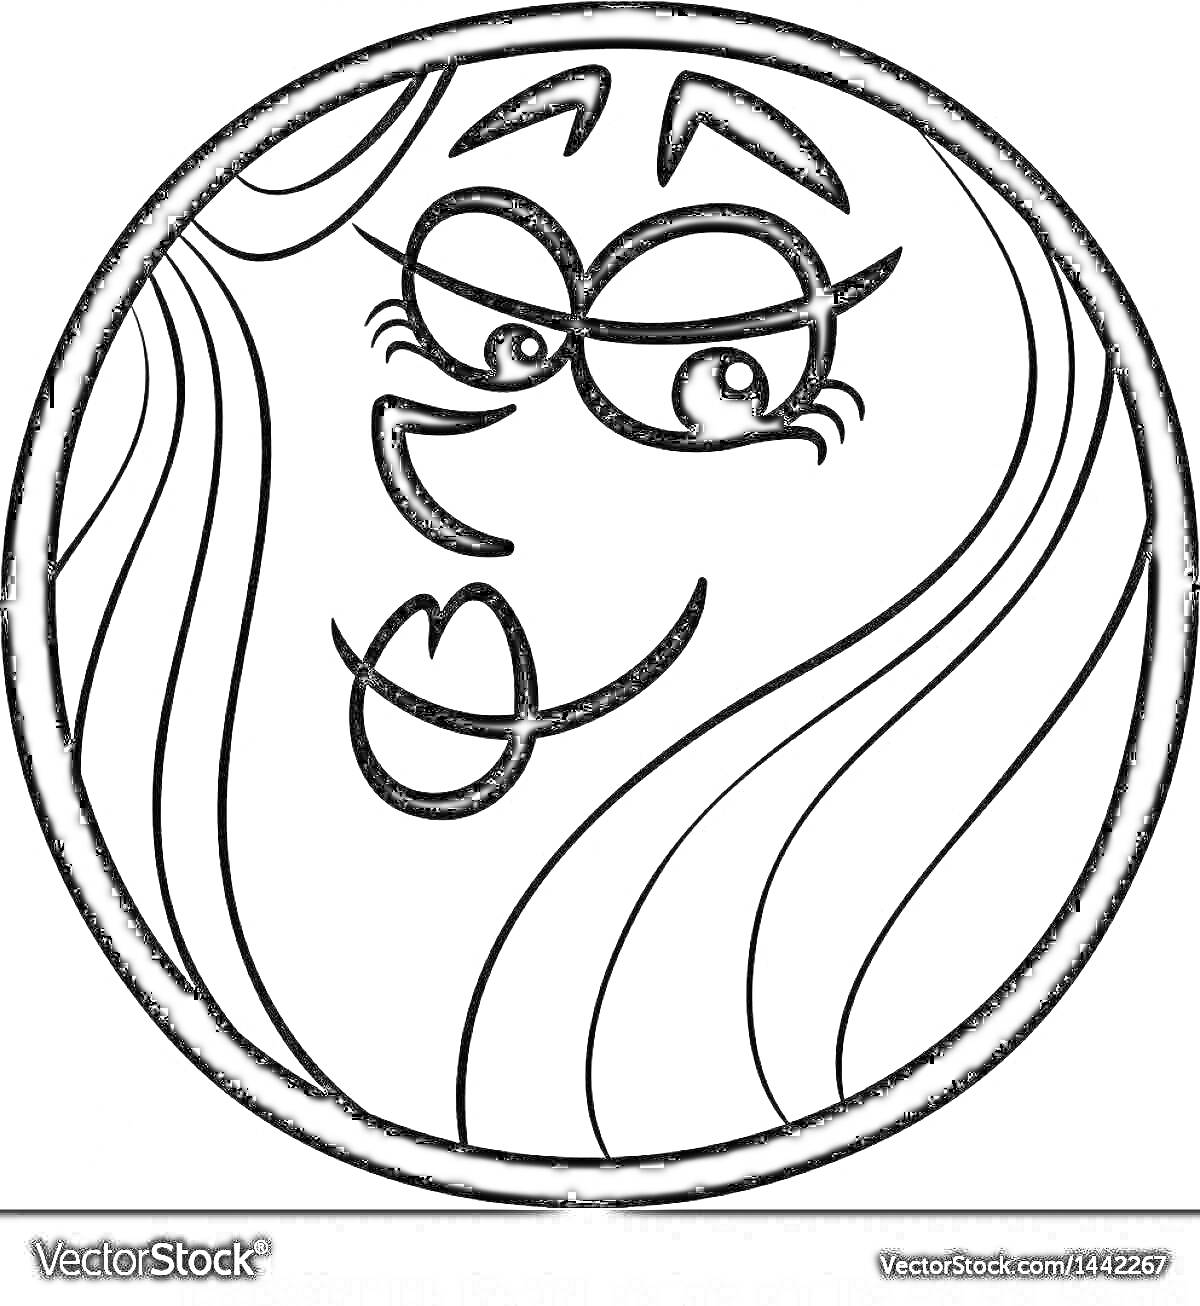 Раскраска Антропоморфное изображение Венеры с длинными волосами и выразительным лицом